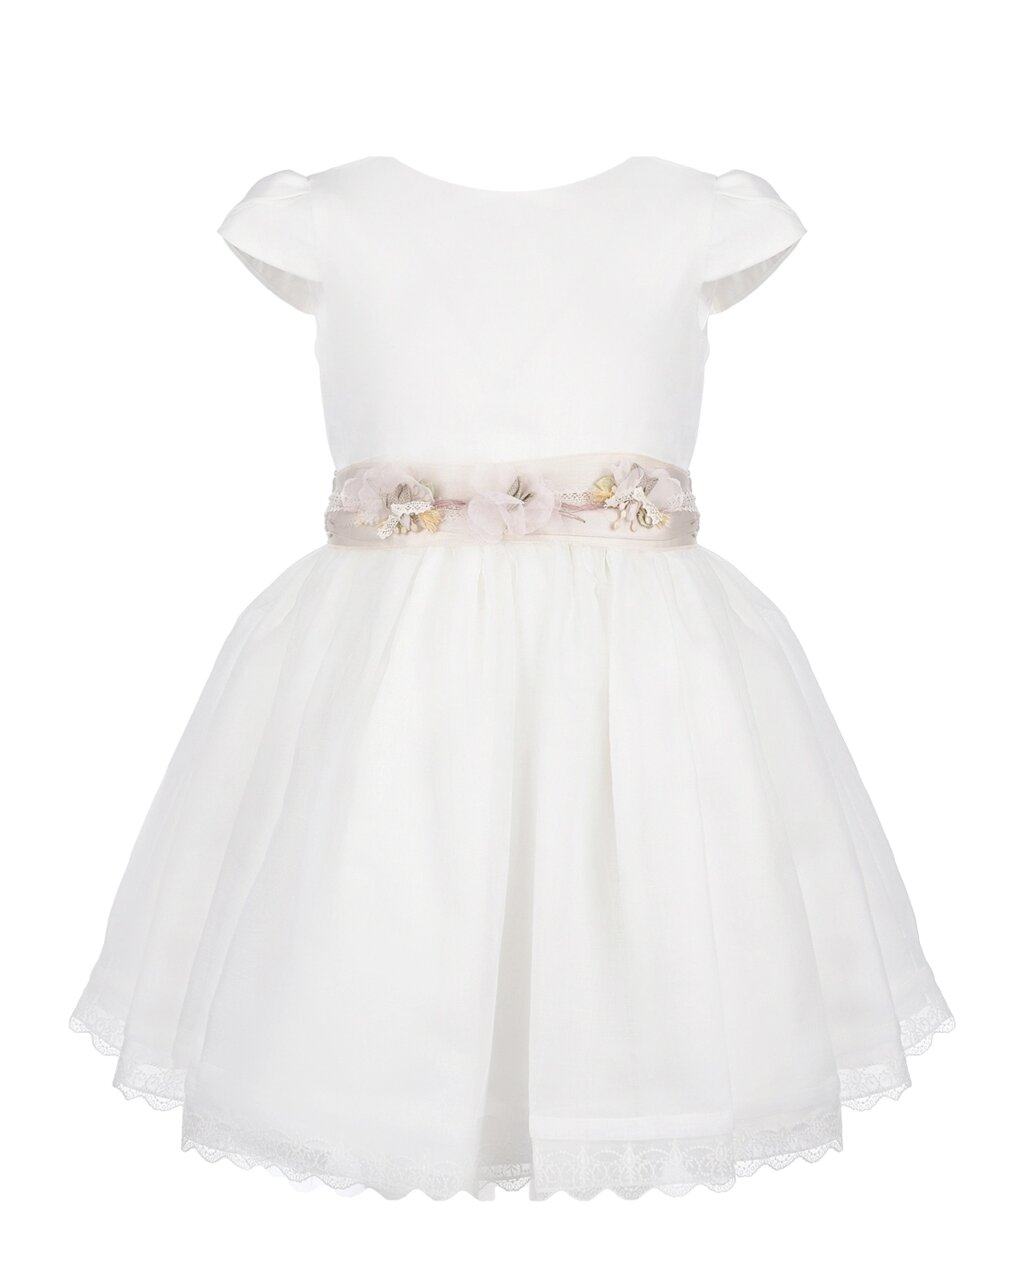 Молочное платье с цветочным поясом Amaya от компании Admi - фото 1